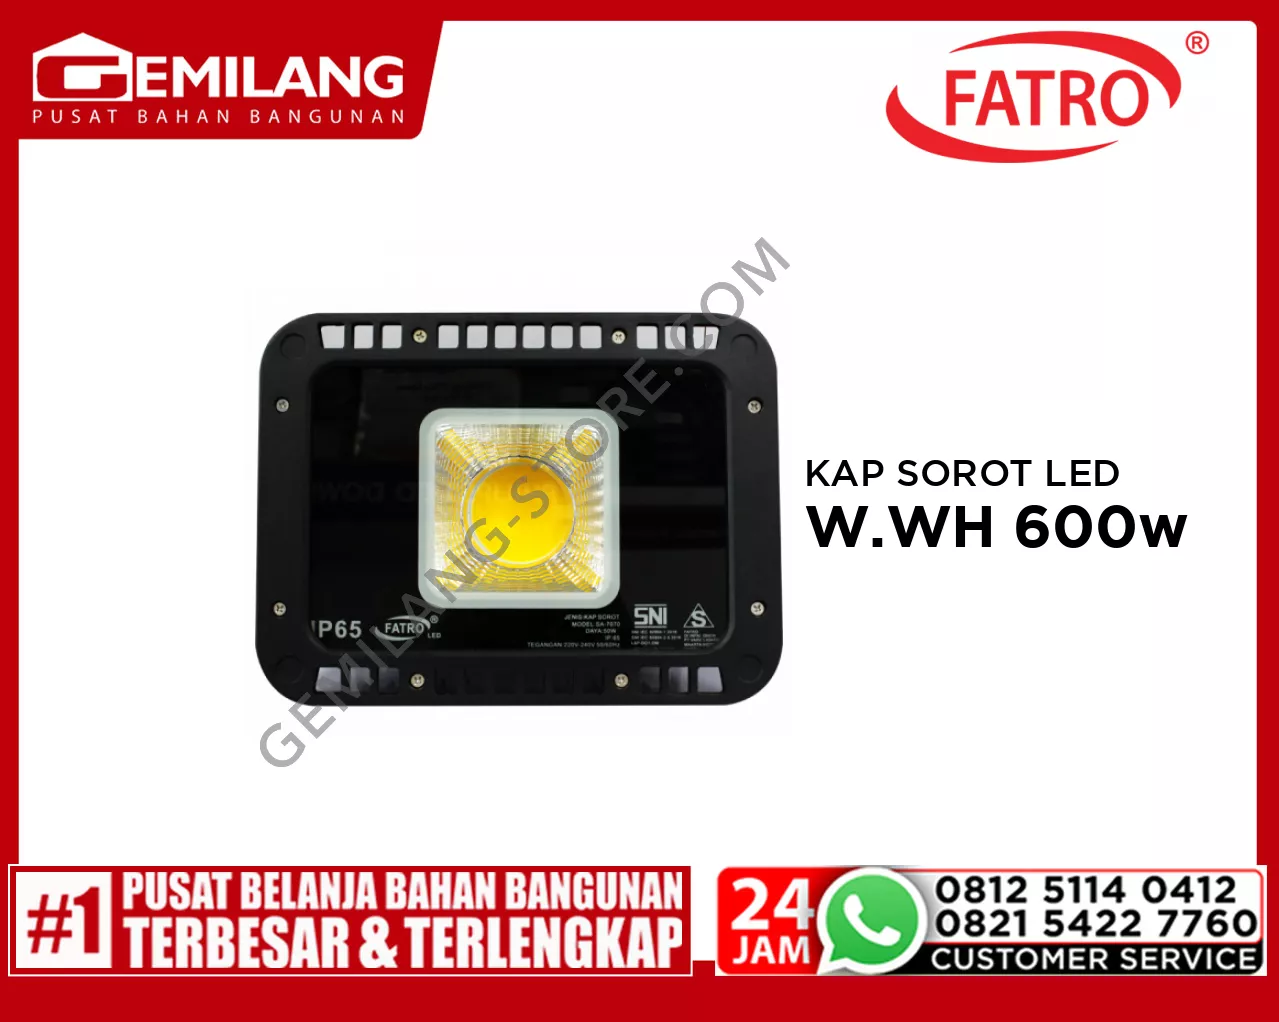 FATRO KAP SOROT LED SA 7070 W.WH 600w